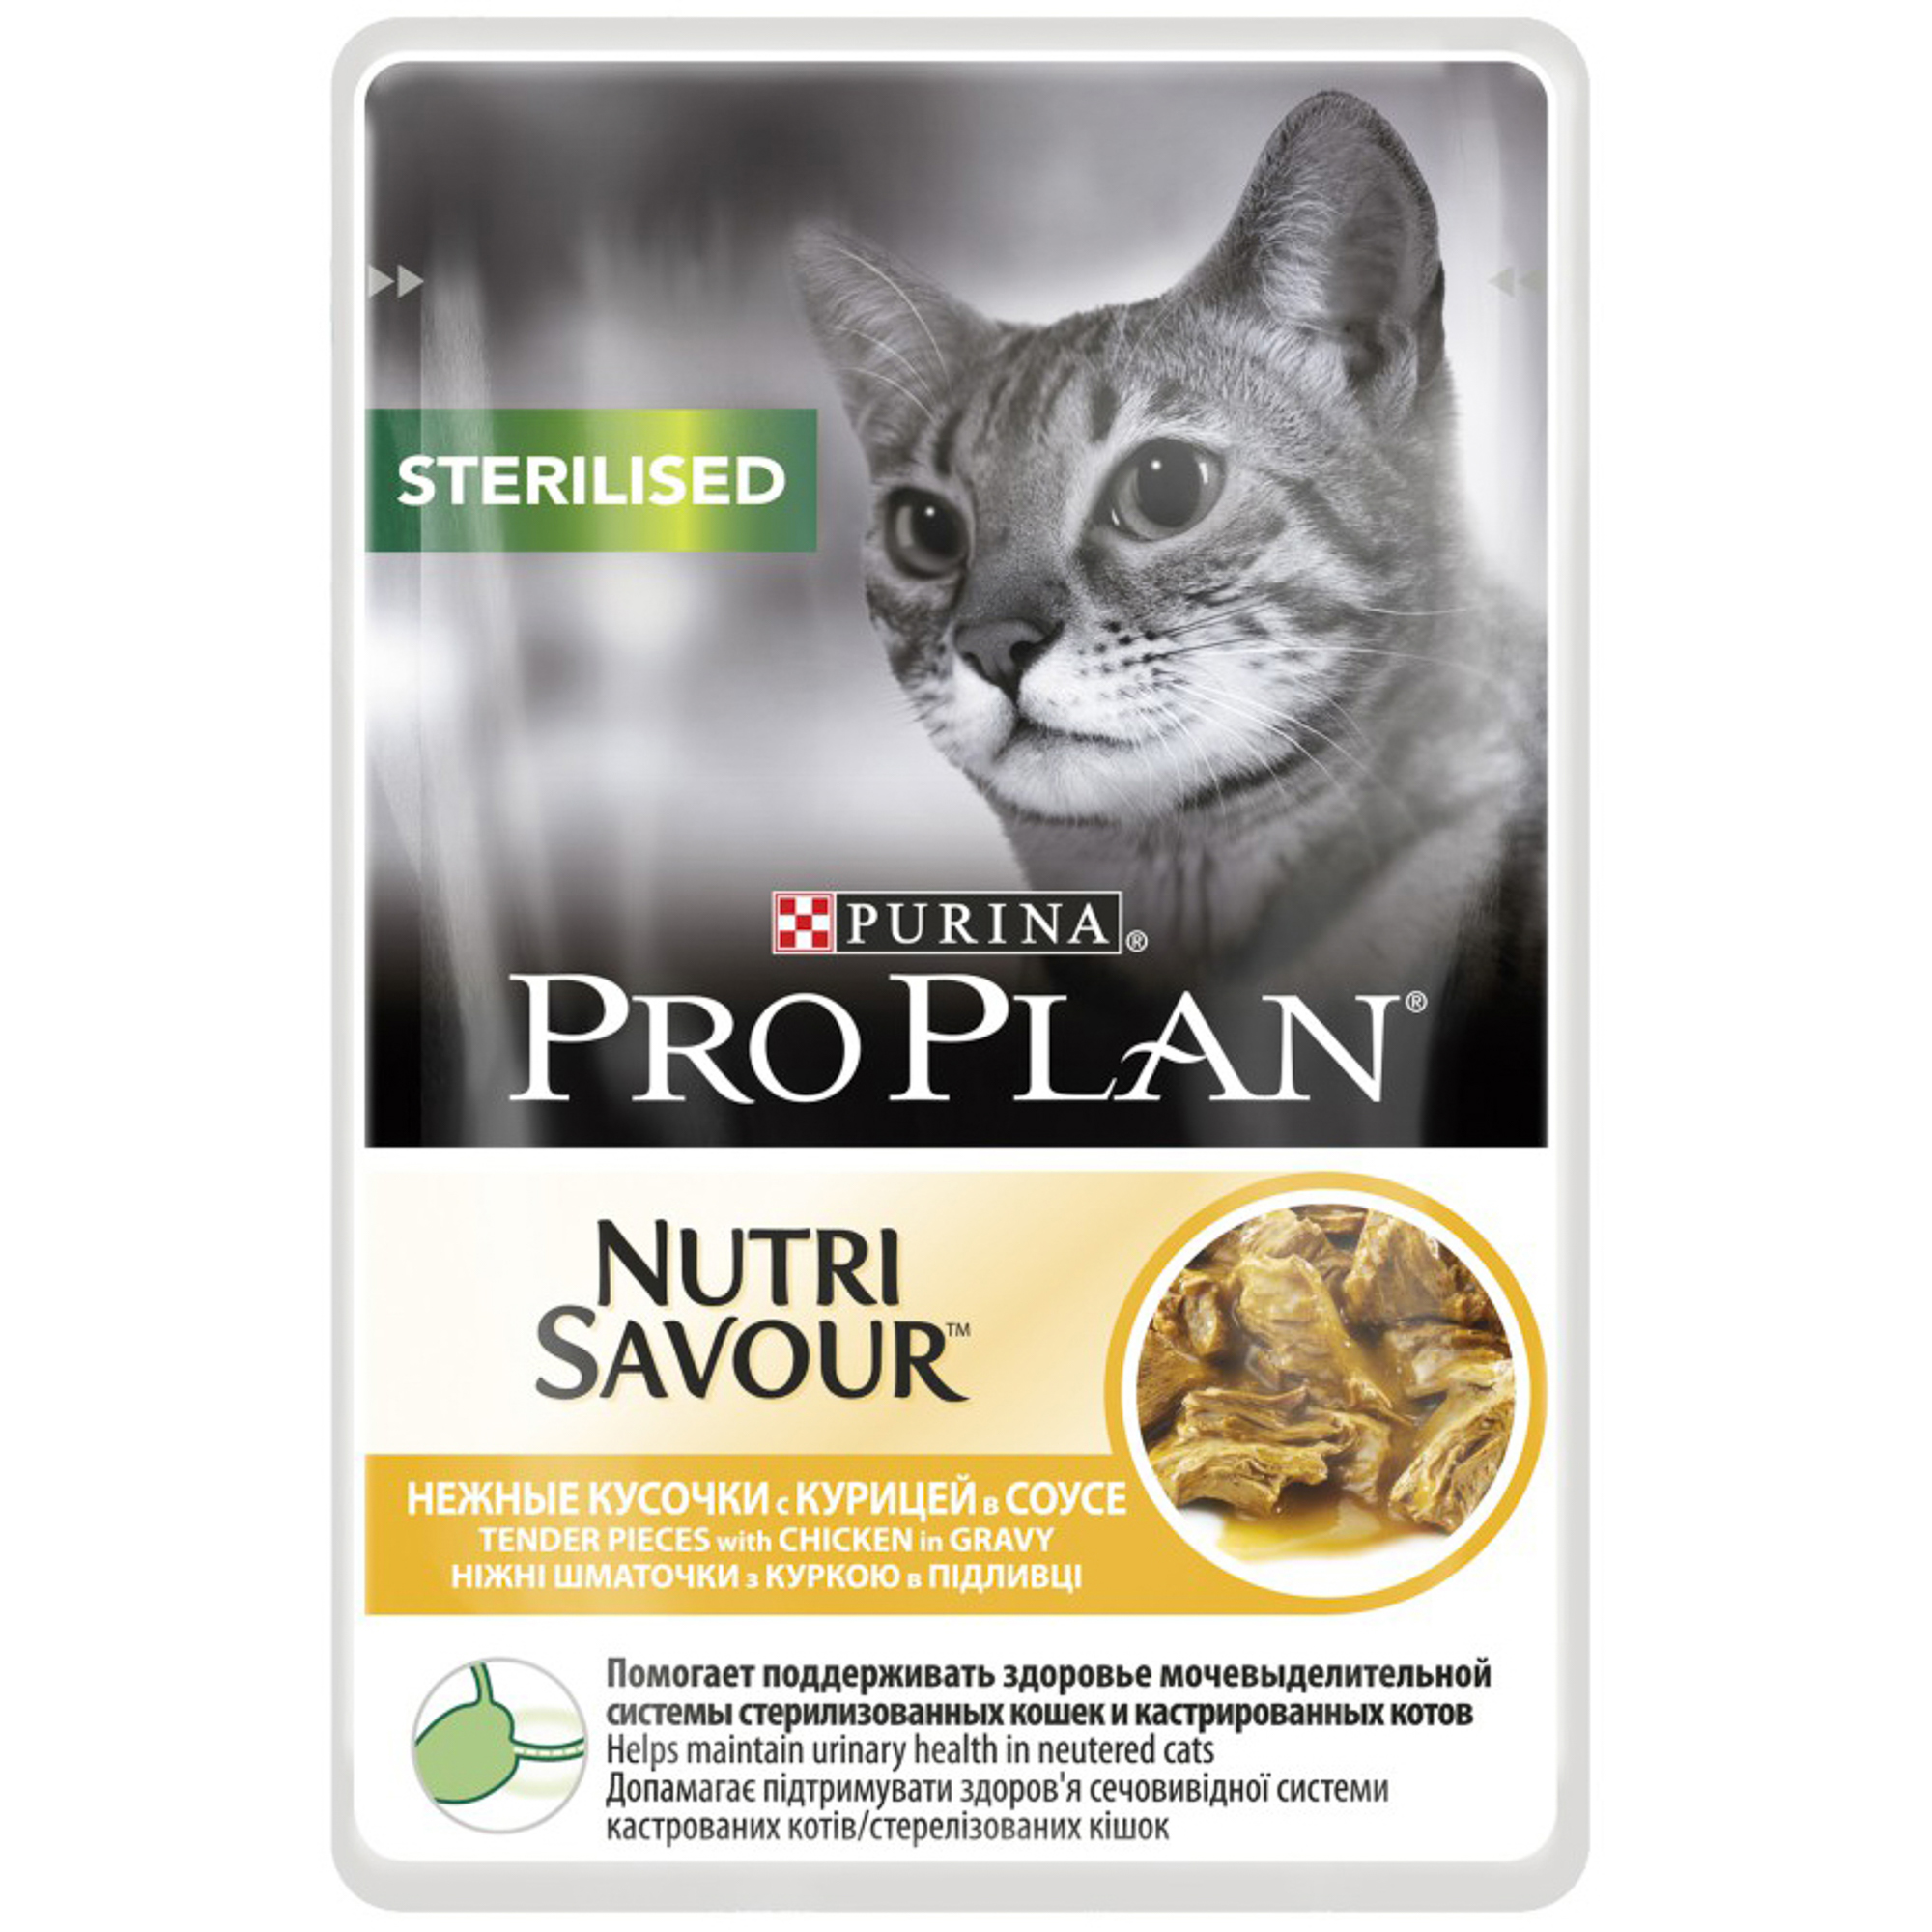 Корм для кошек PRO PLAN Nutri Savour Sterilised для стерилизованных кошек, с курицей в соусе, 85г корм для кошек pro plan nutri savour sterilised утка в соусе 85 г